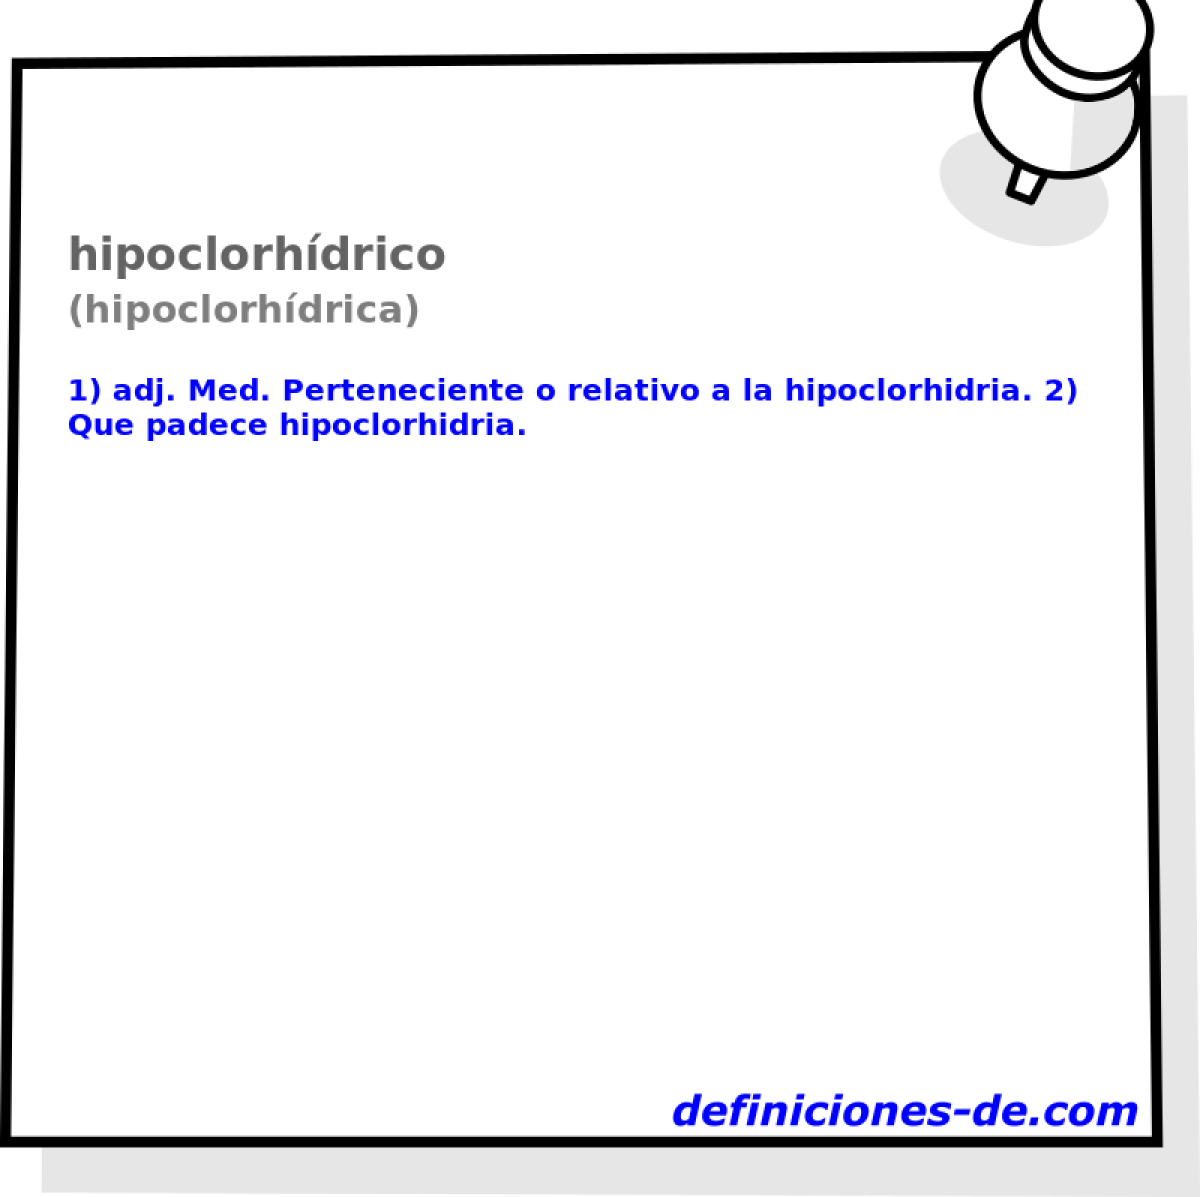 hipoclorhdrico (hipoclorhdrica)